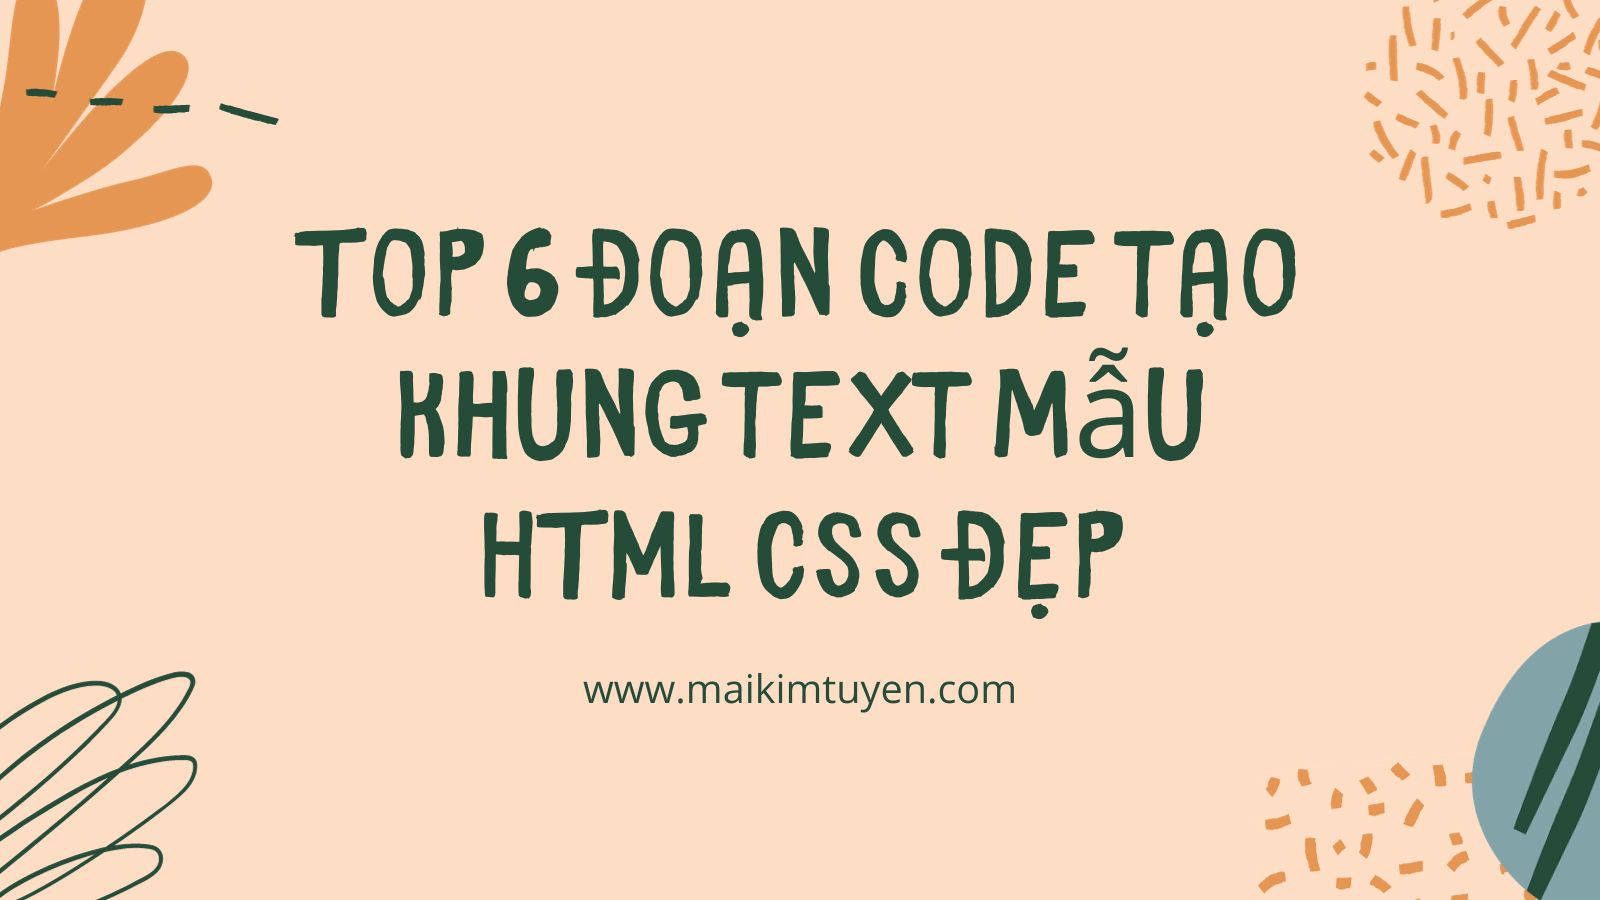 Top 6 đoạn code tạo khung text mẫu HTML CSS đẹp